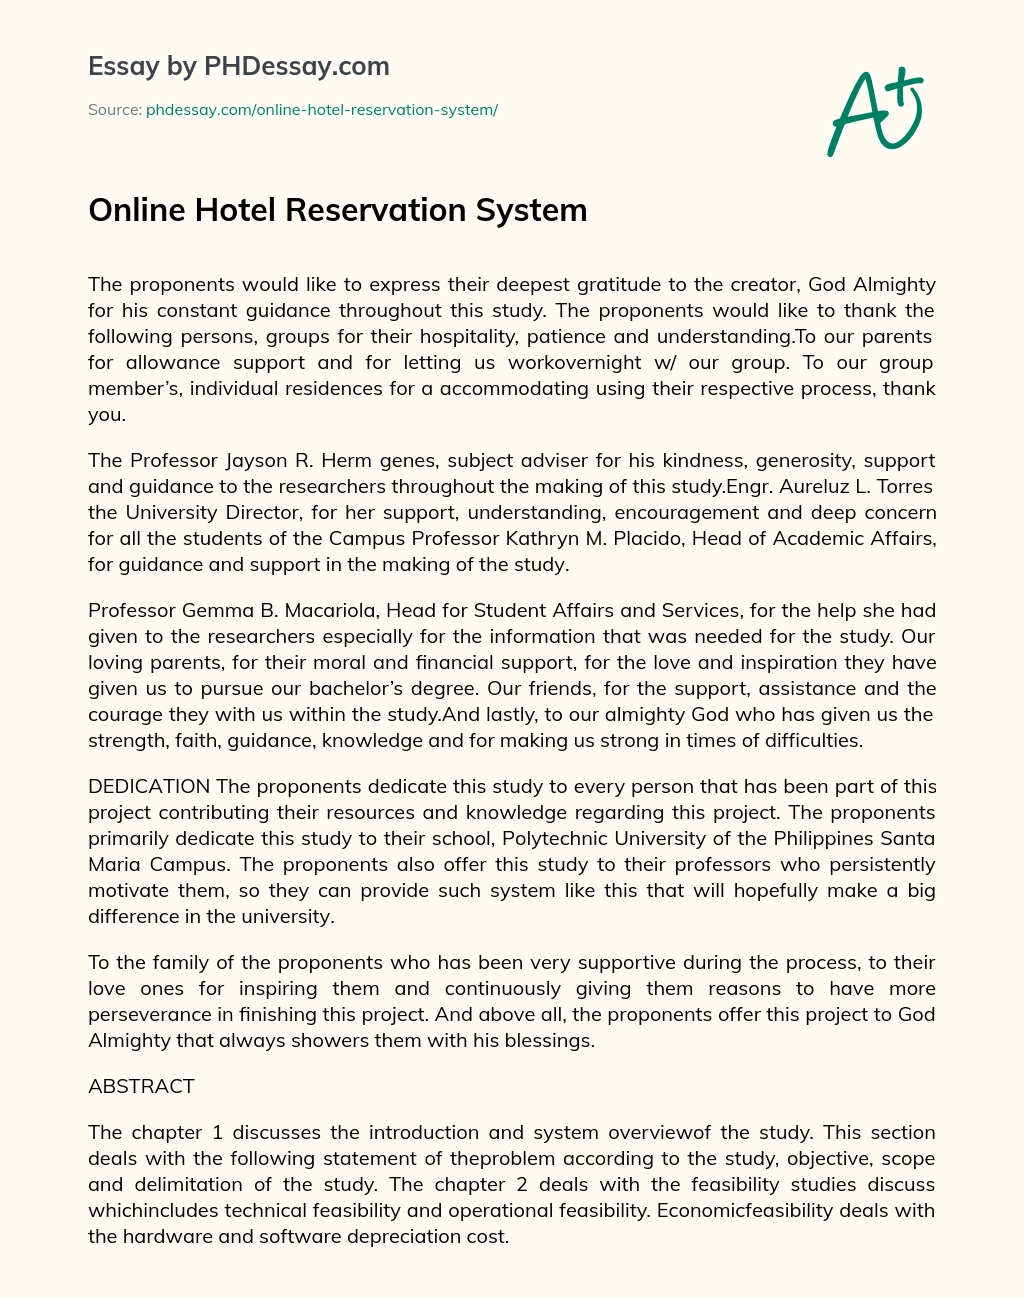 Online Hotel Reservation System essay